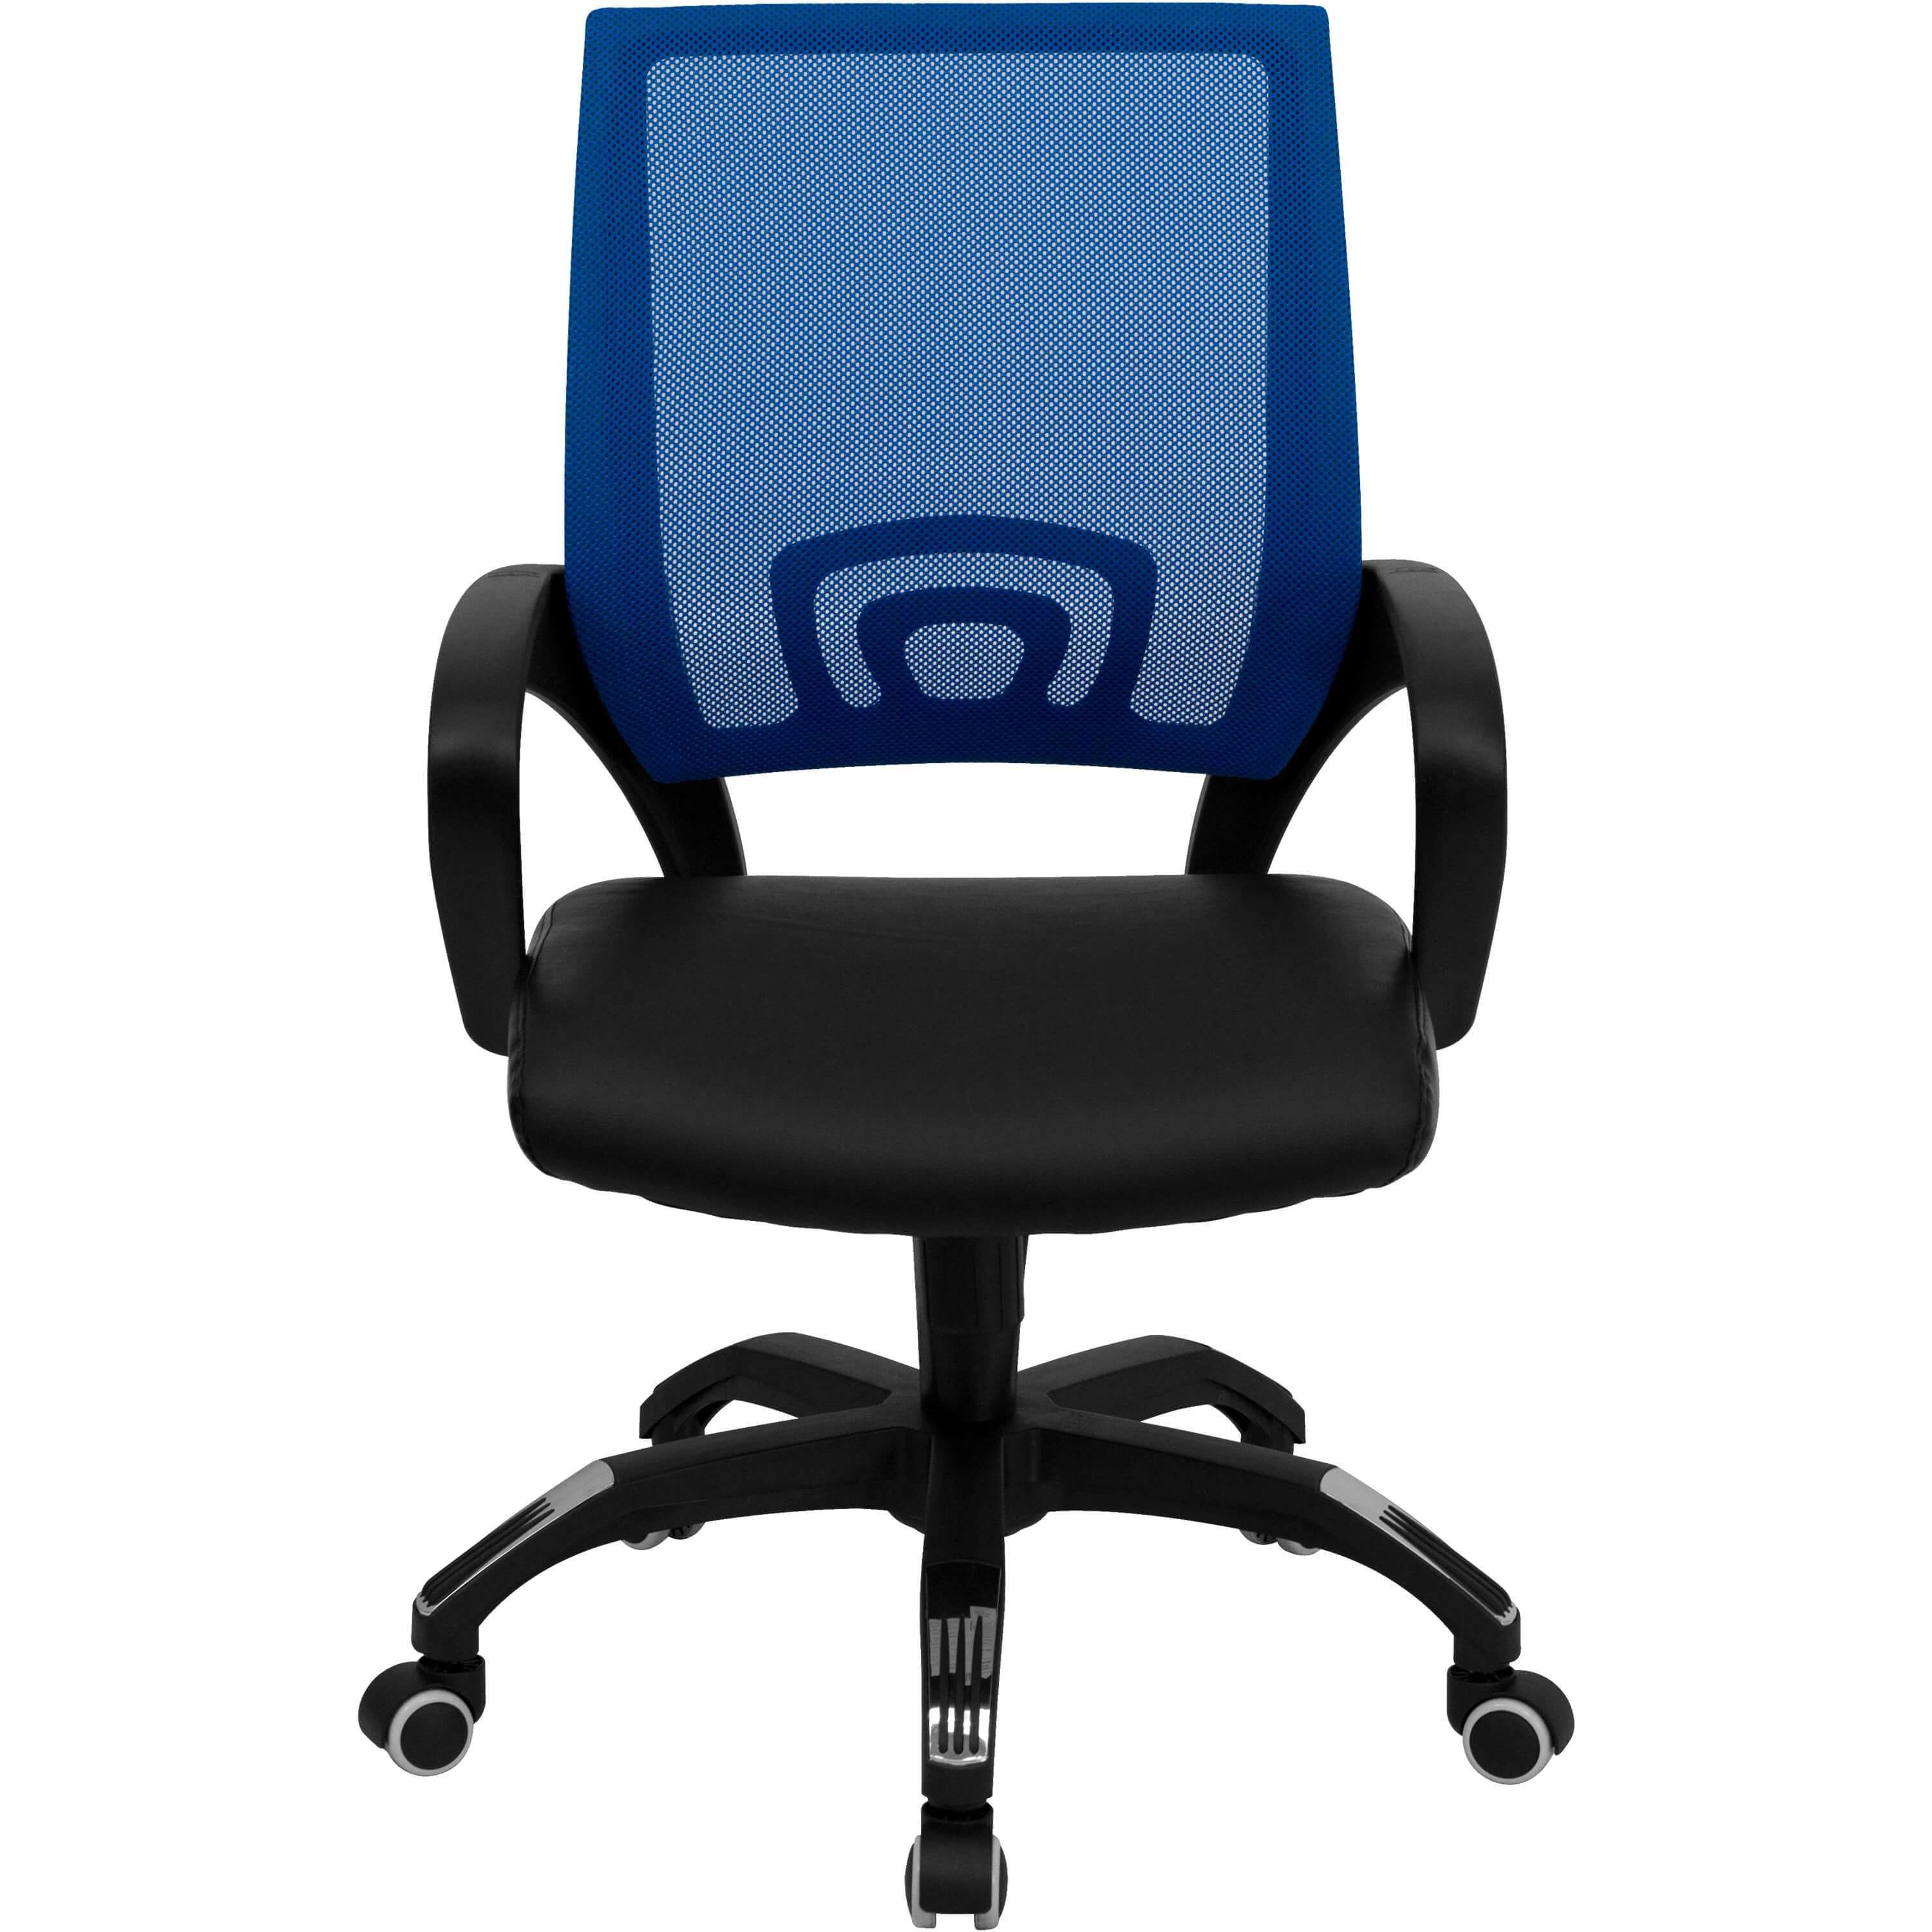 Colorful desk chairs CUB CP B176A01 BLUE GG FLA